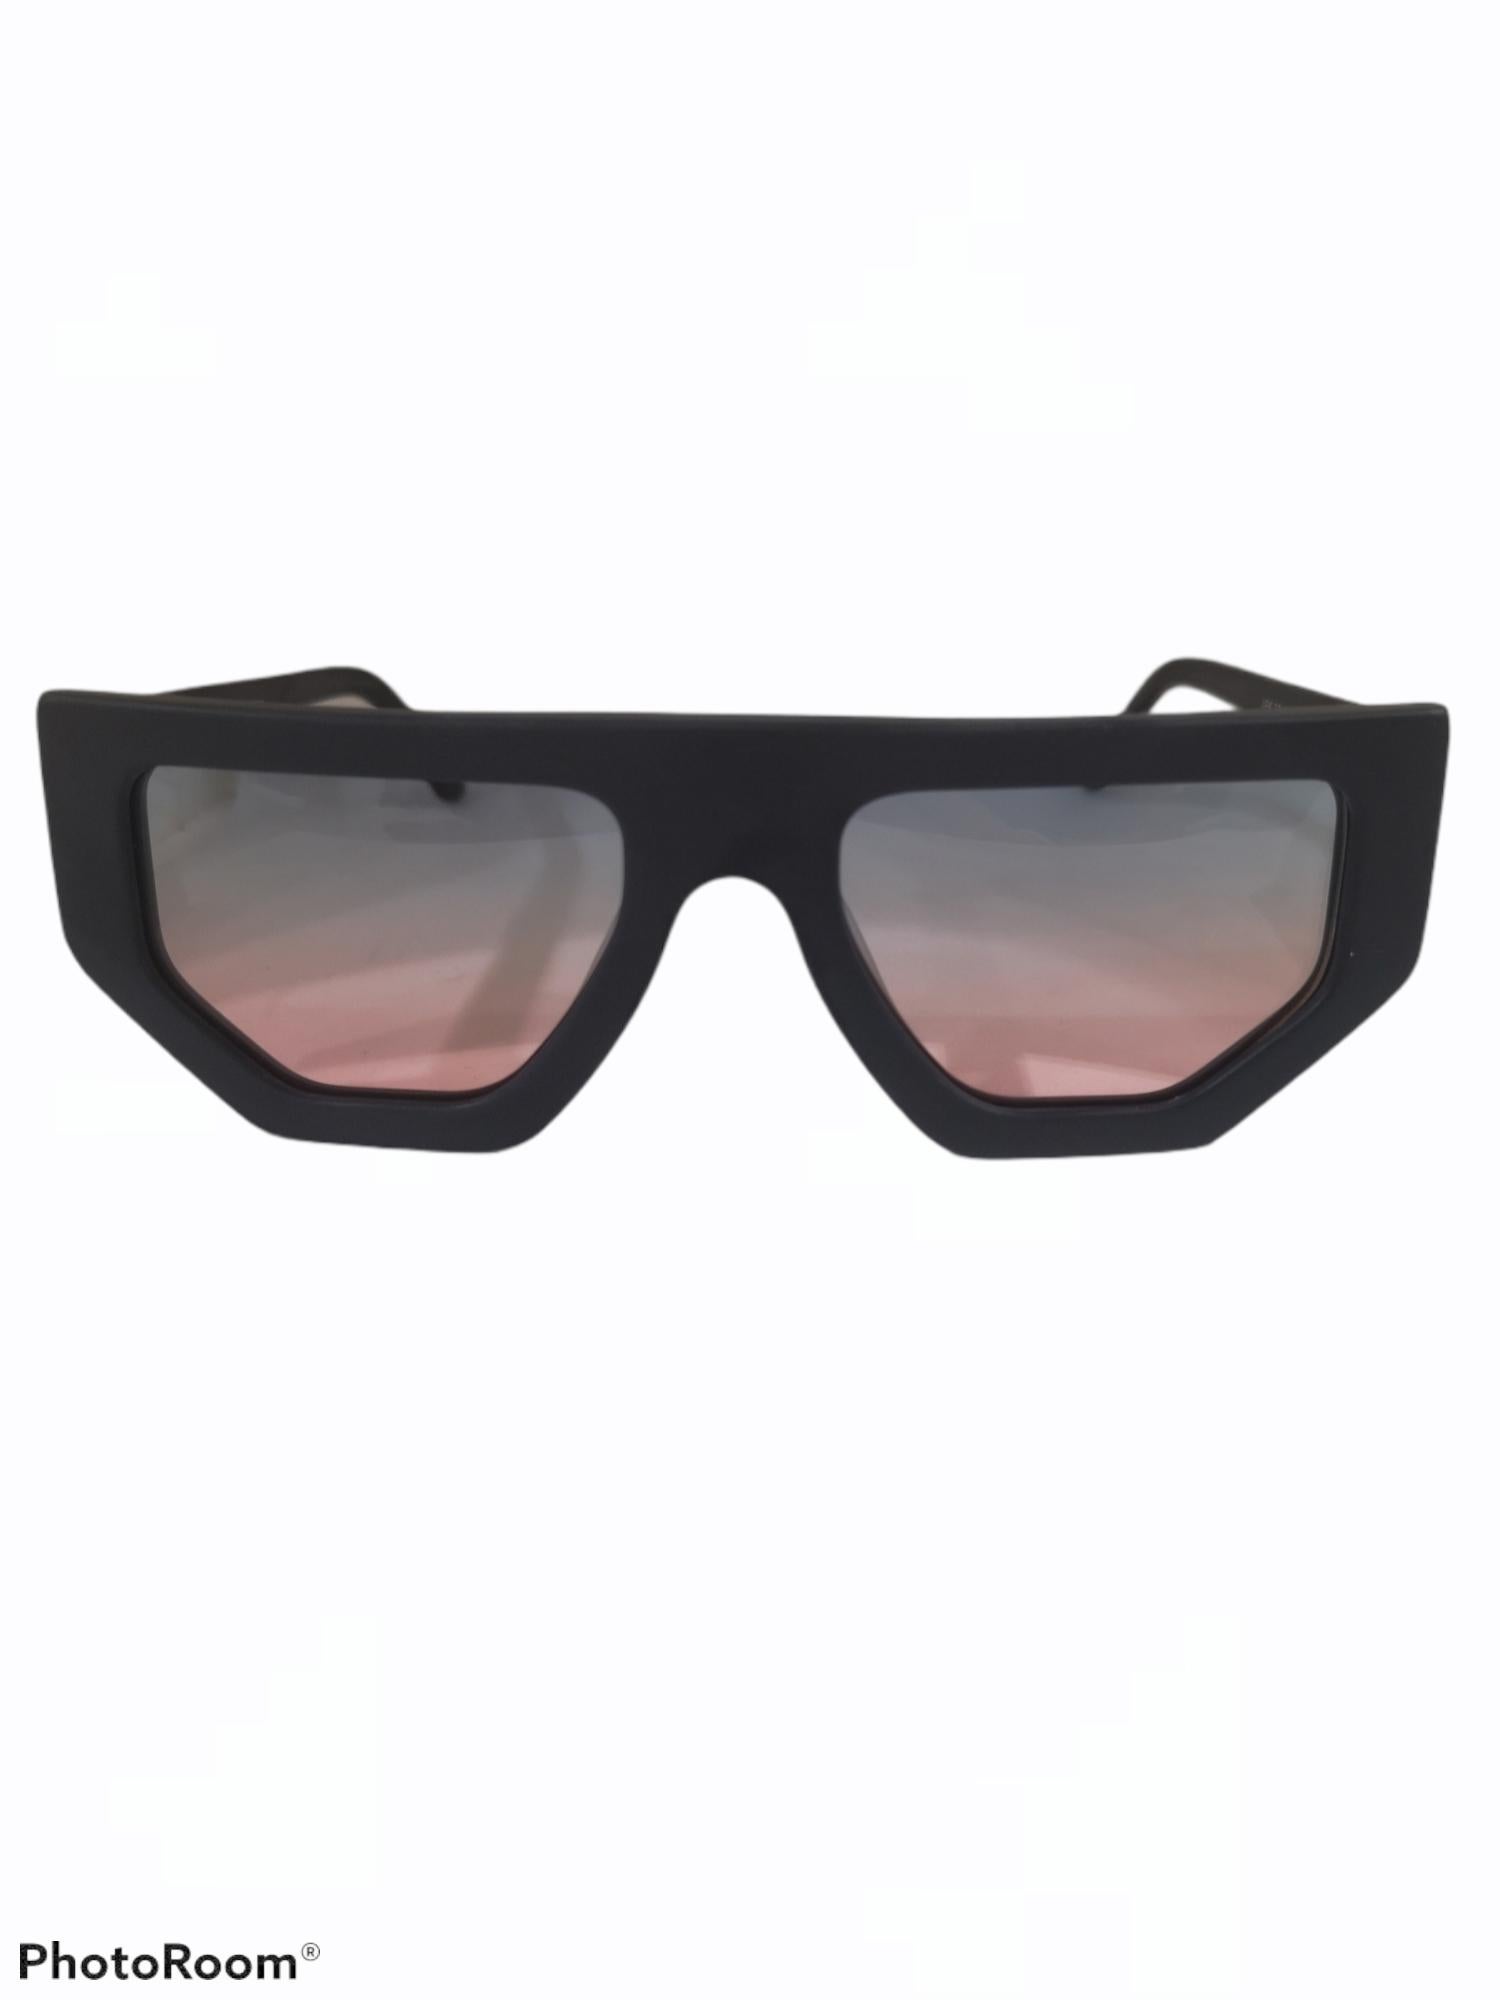 Black multicoloured glasses sunglasses NWOT 1